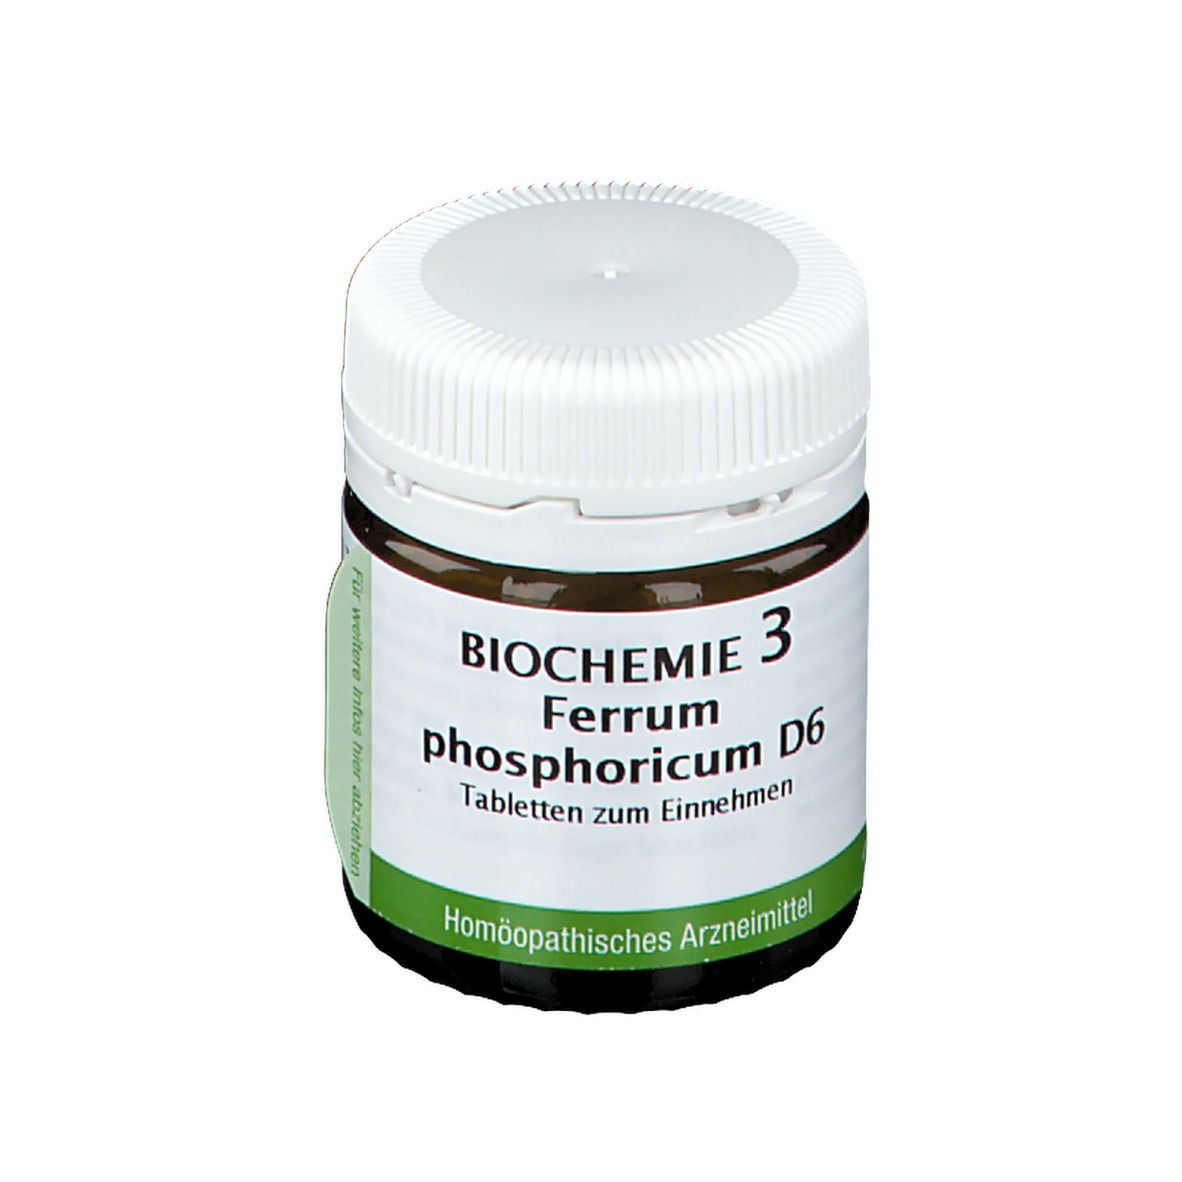 Bombastus Biochemie 3 Ferrum phosphoricum D 6 Tabletten